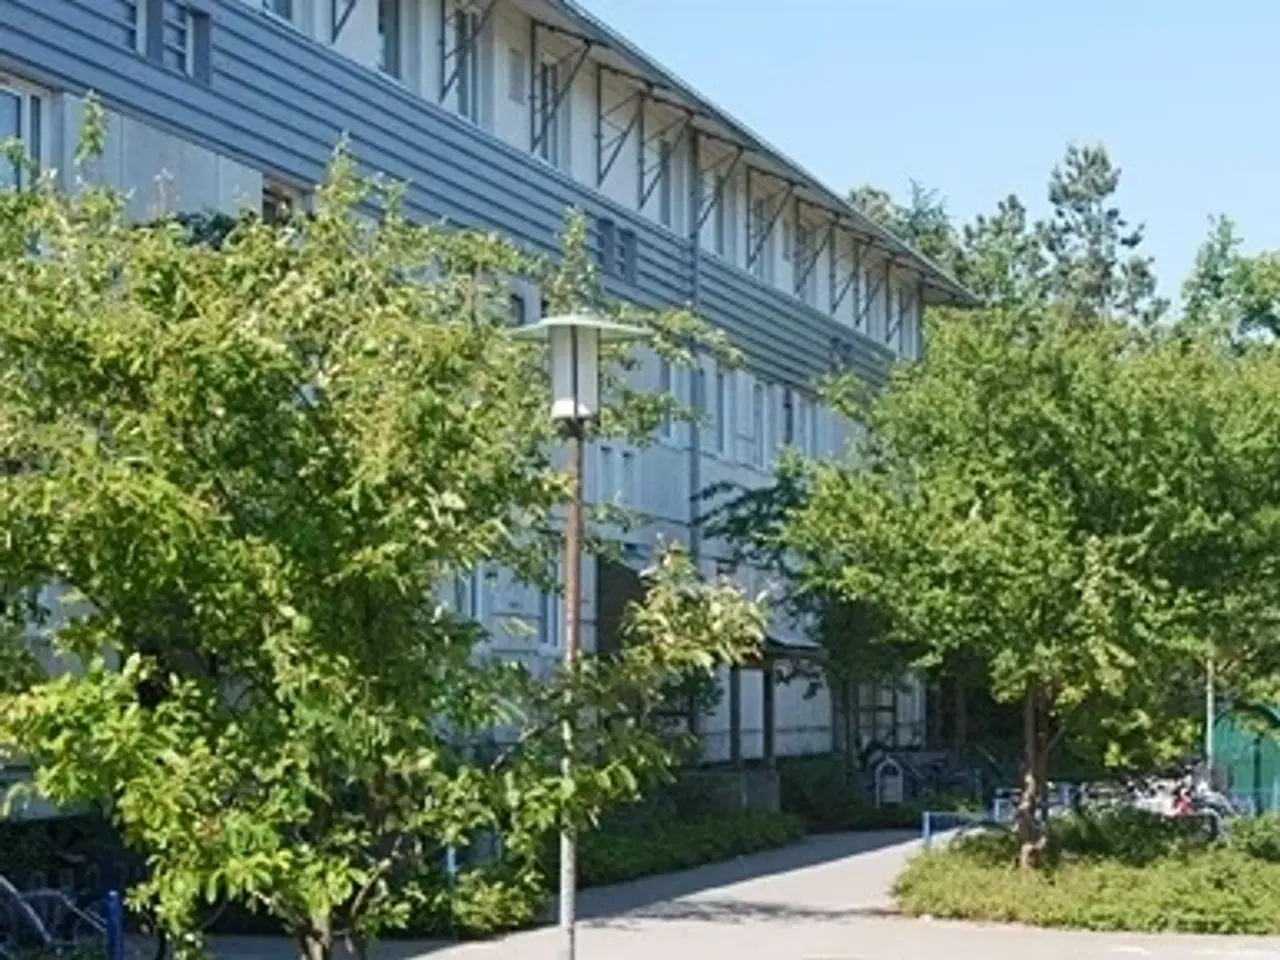 Billede 1 - Klosterparkvej, 95 m2, 3 værelser, 6.029 kr., Kalundborg, Vestsjælland